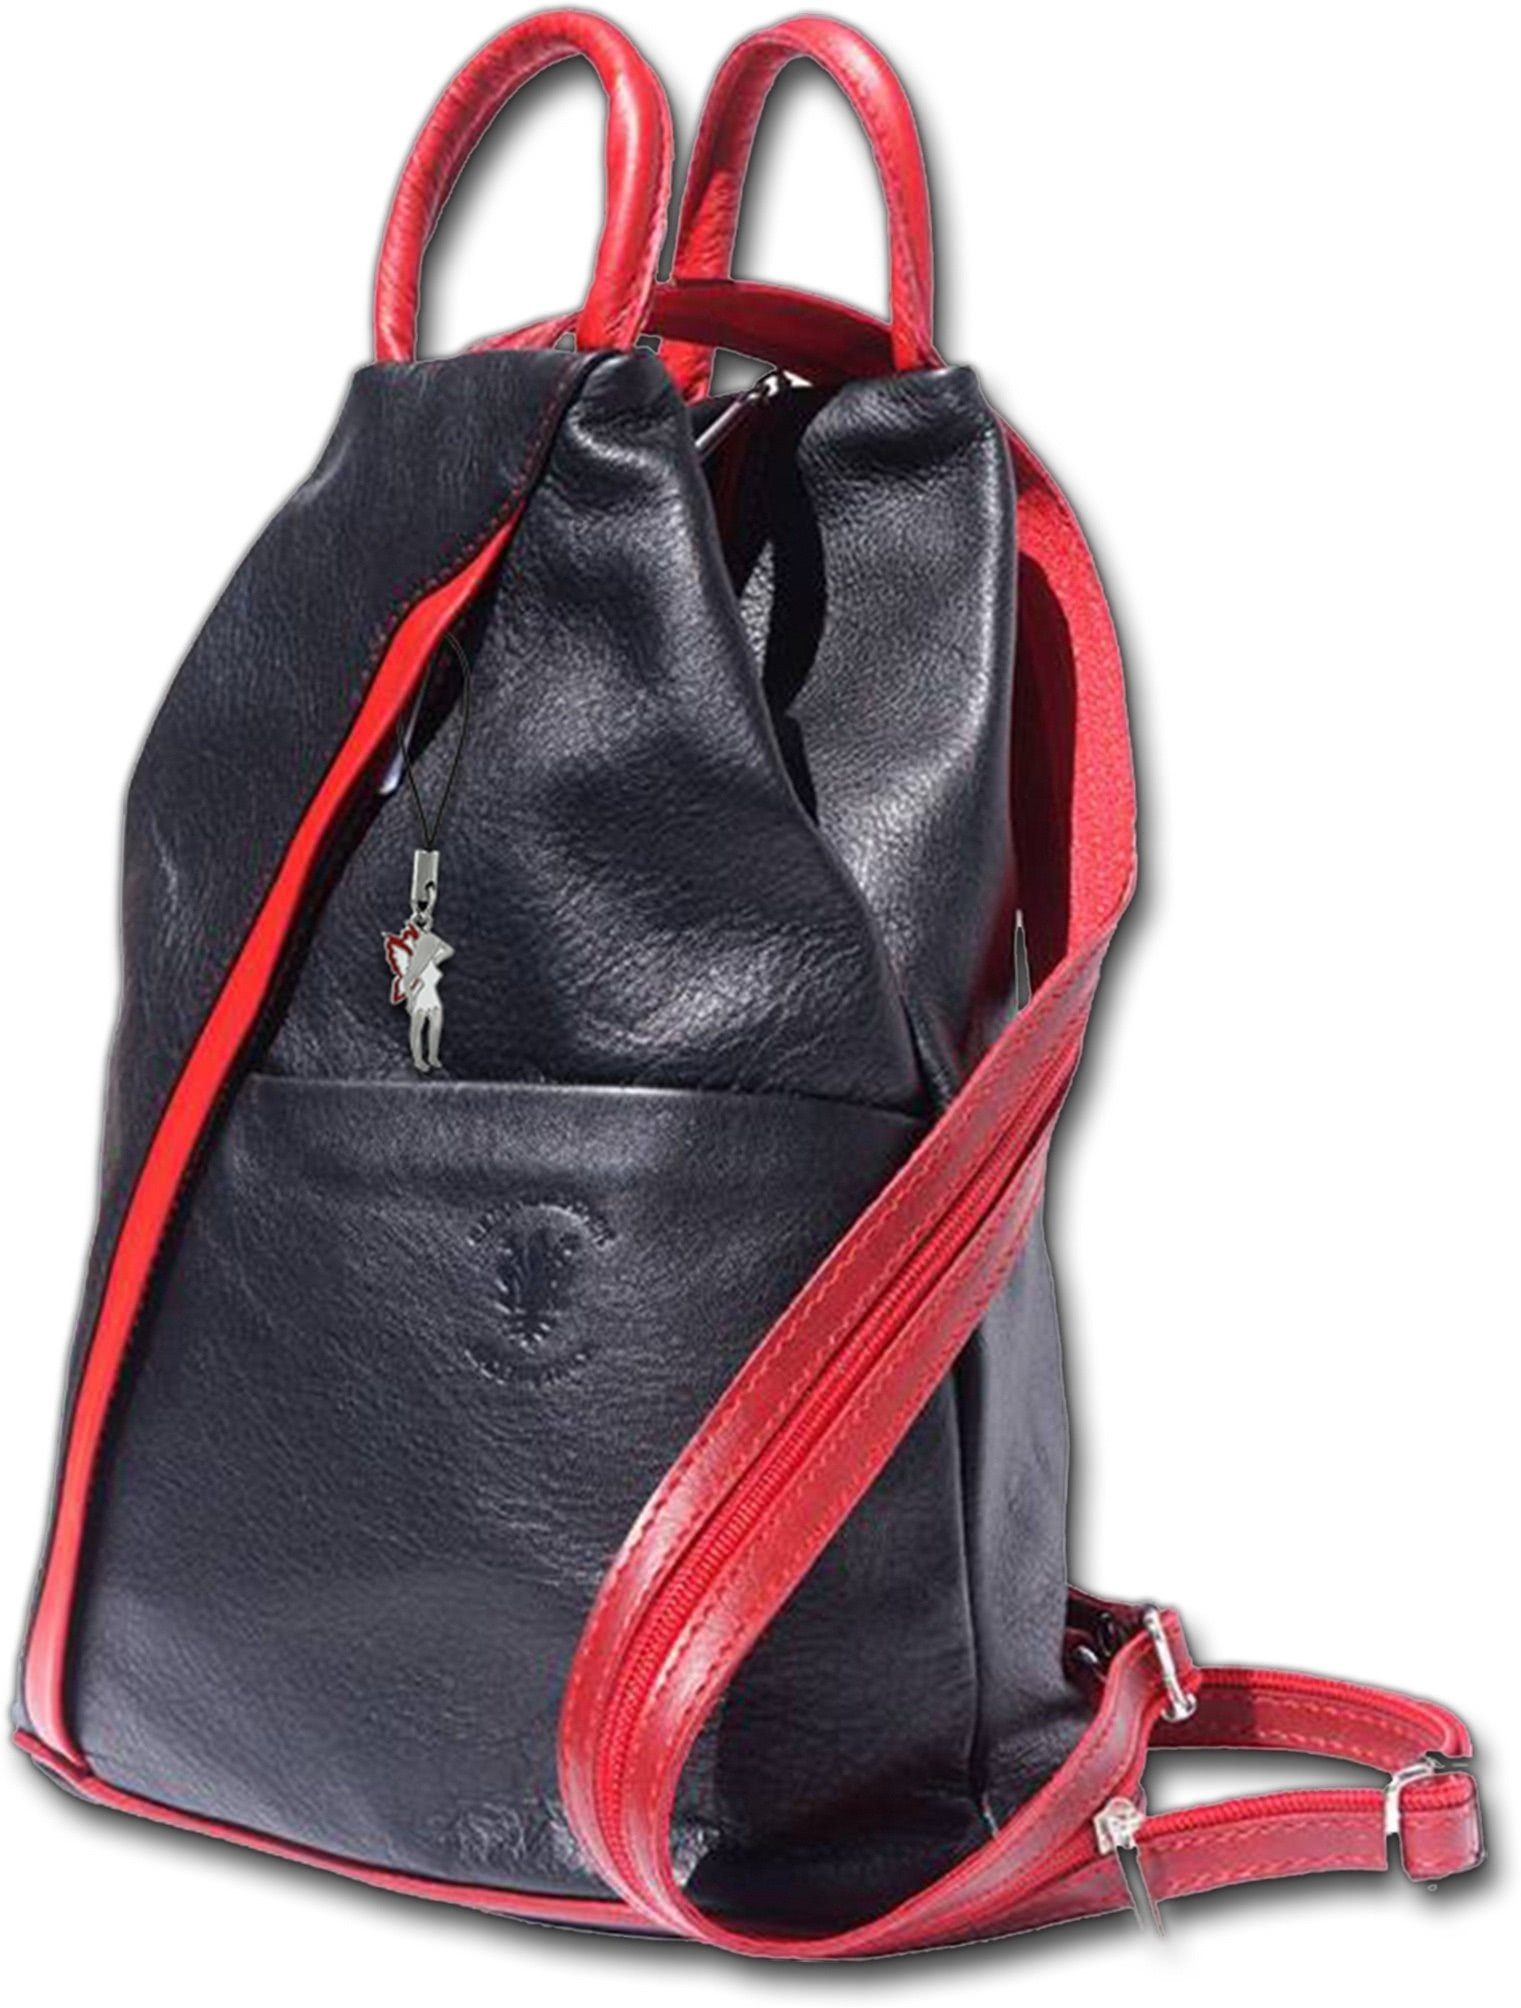 FLORENCE Cityrucksack Florence echtes Leder Damentasche (Schultertasche),  Damen Rucksack, Tasche aus Echtleder in schwarz, rot, ca. 26cm Breite,  Made-In Italy